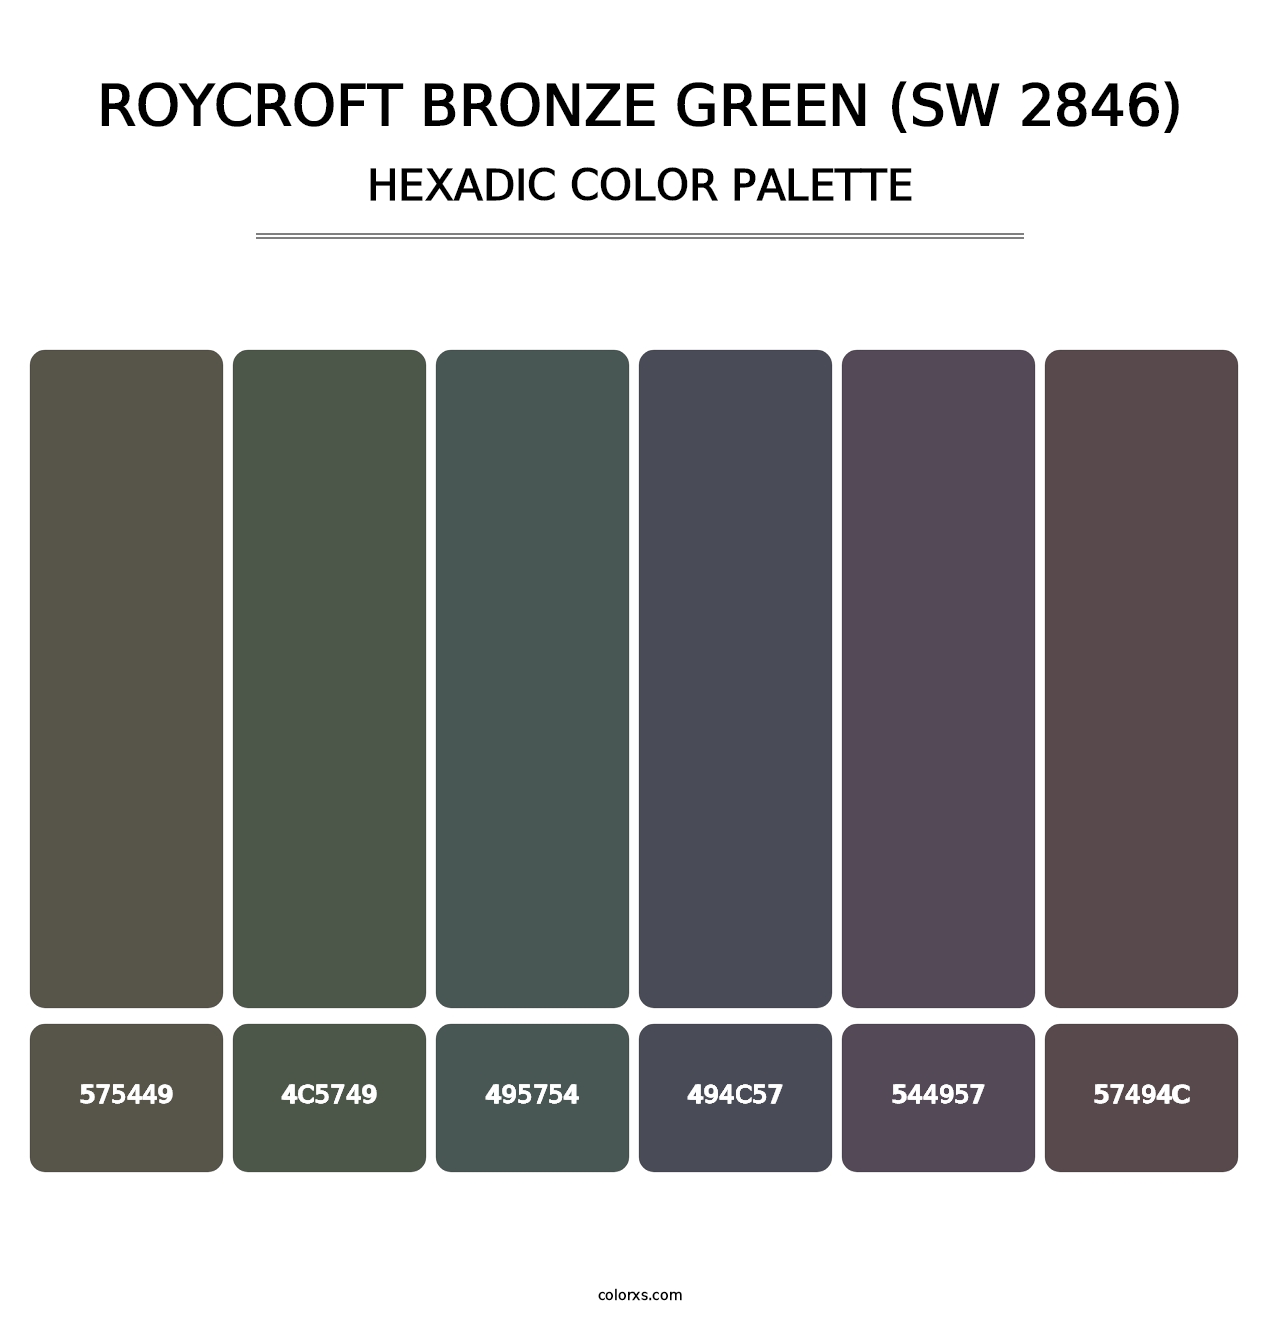 Roycroft Bronze Green (SW 2846) - Hexadic Color Palette